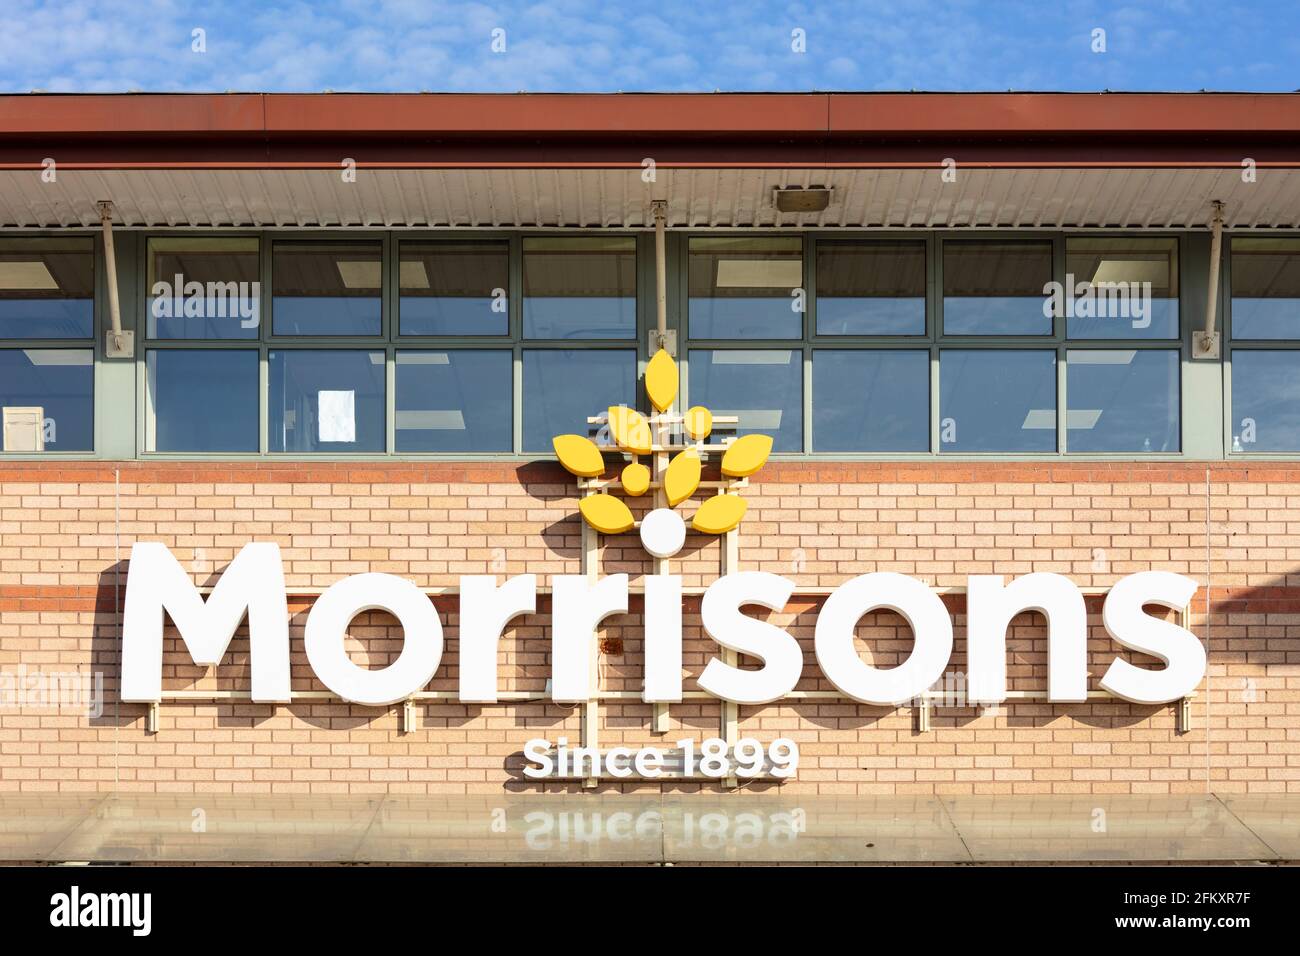 El logotipo de la tienda Morrisons Supermarket y el parque de tiendas Victoria Netherfield Nottingham East Midlands Inglaterra GB Reino Unido Europa Foto de stock